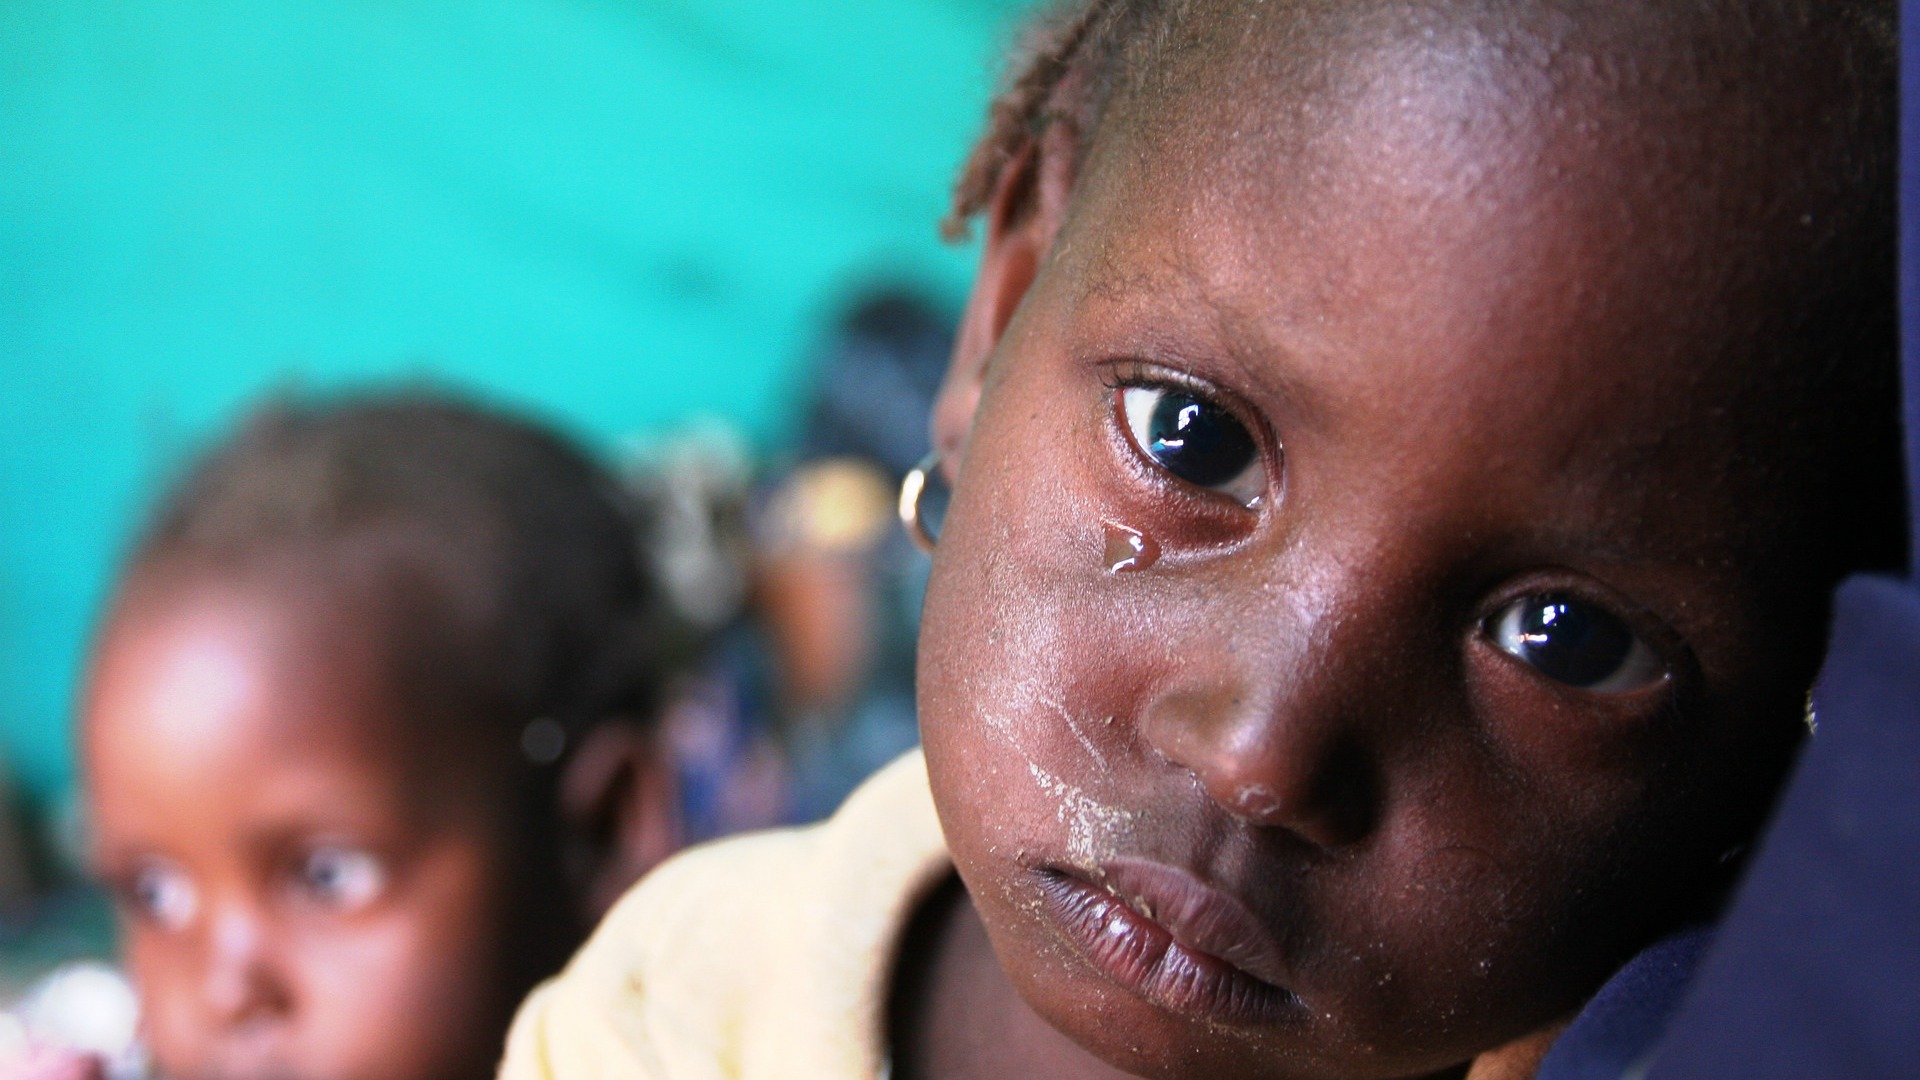 Le trafic d'enfants est dénoncé au Nigeria | European Commission DG Echo/Flickr/CC BY-ND 2.0)